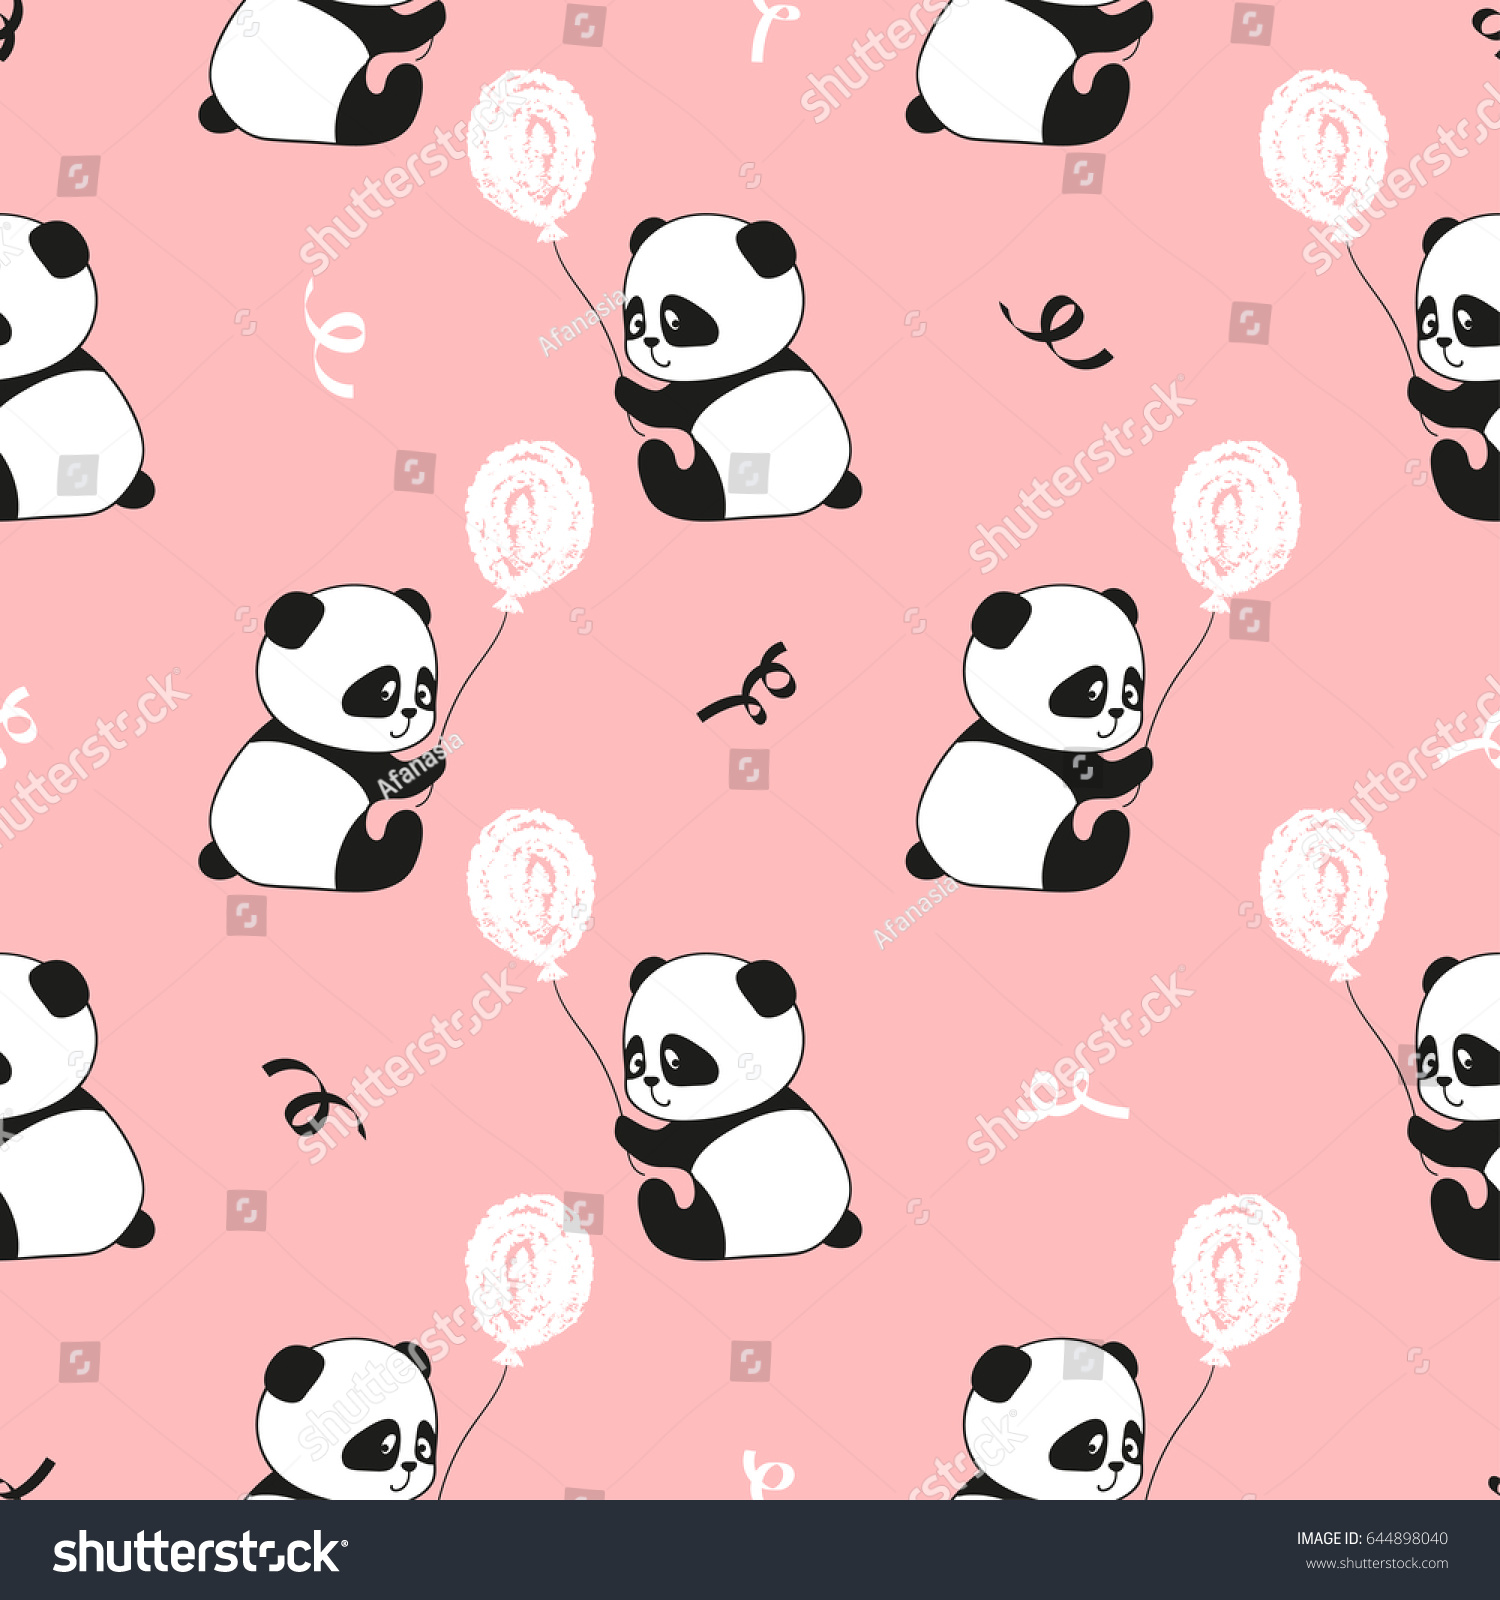 Galeri Gambar Kartun Panda Pink Phontekno